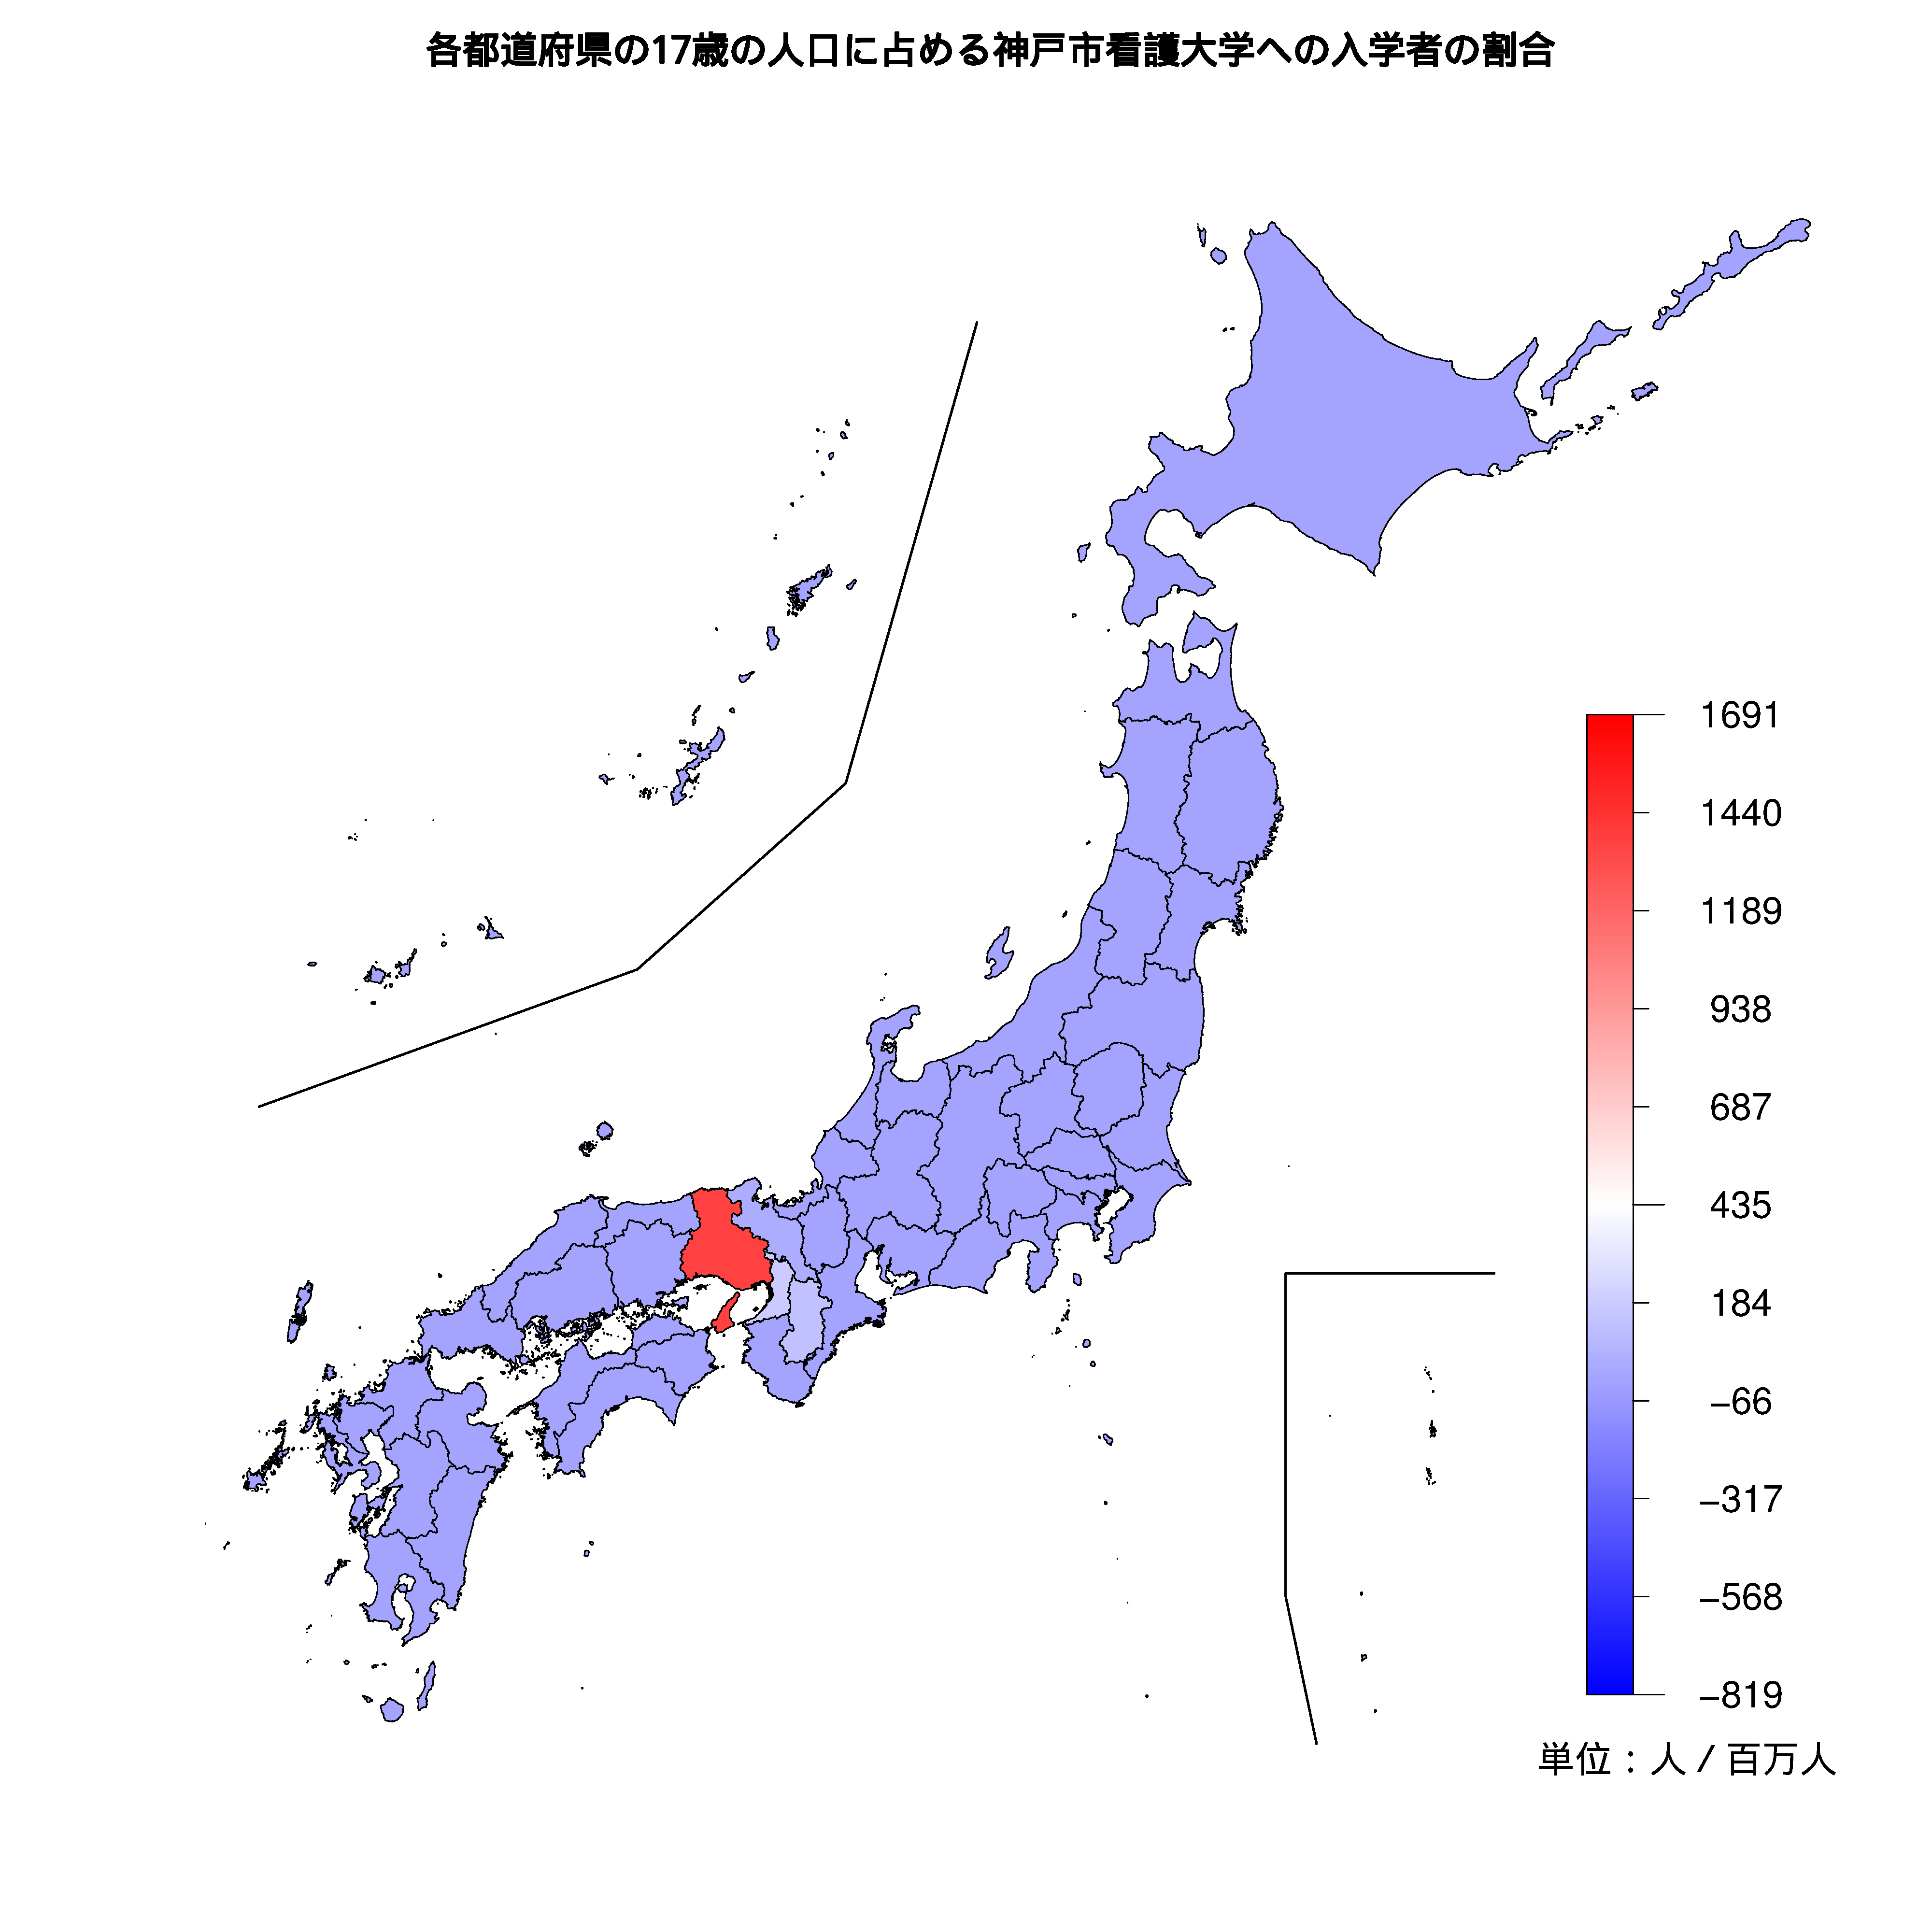 神戸市看護大学への入学者が多い都道府県の色分け地図